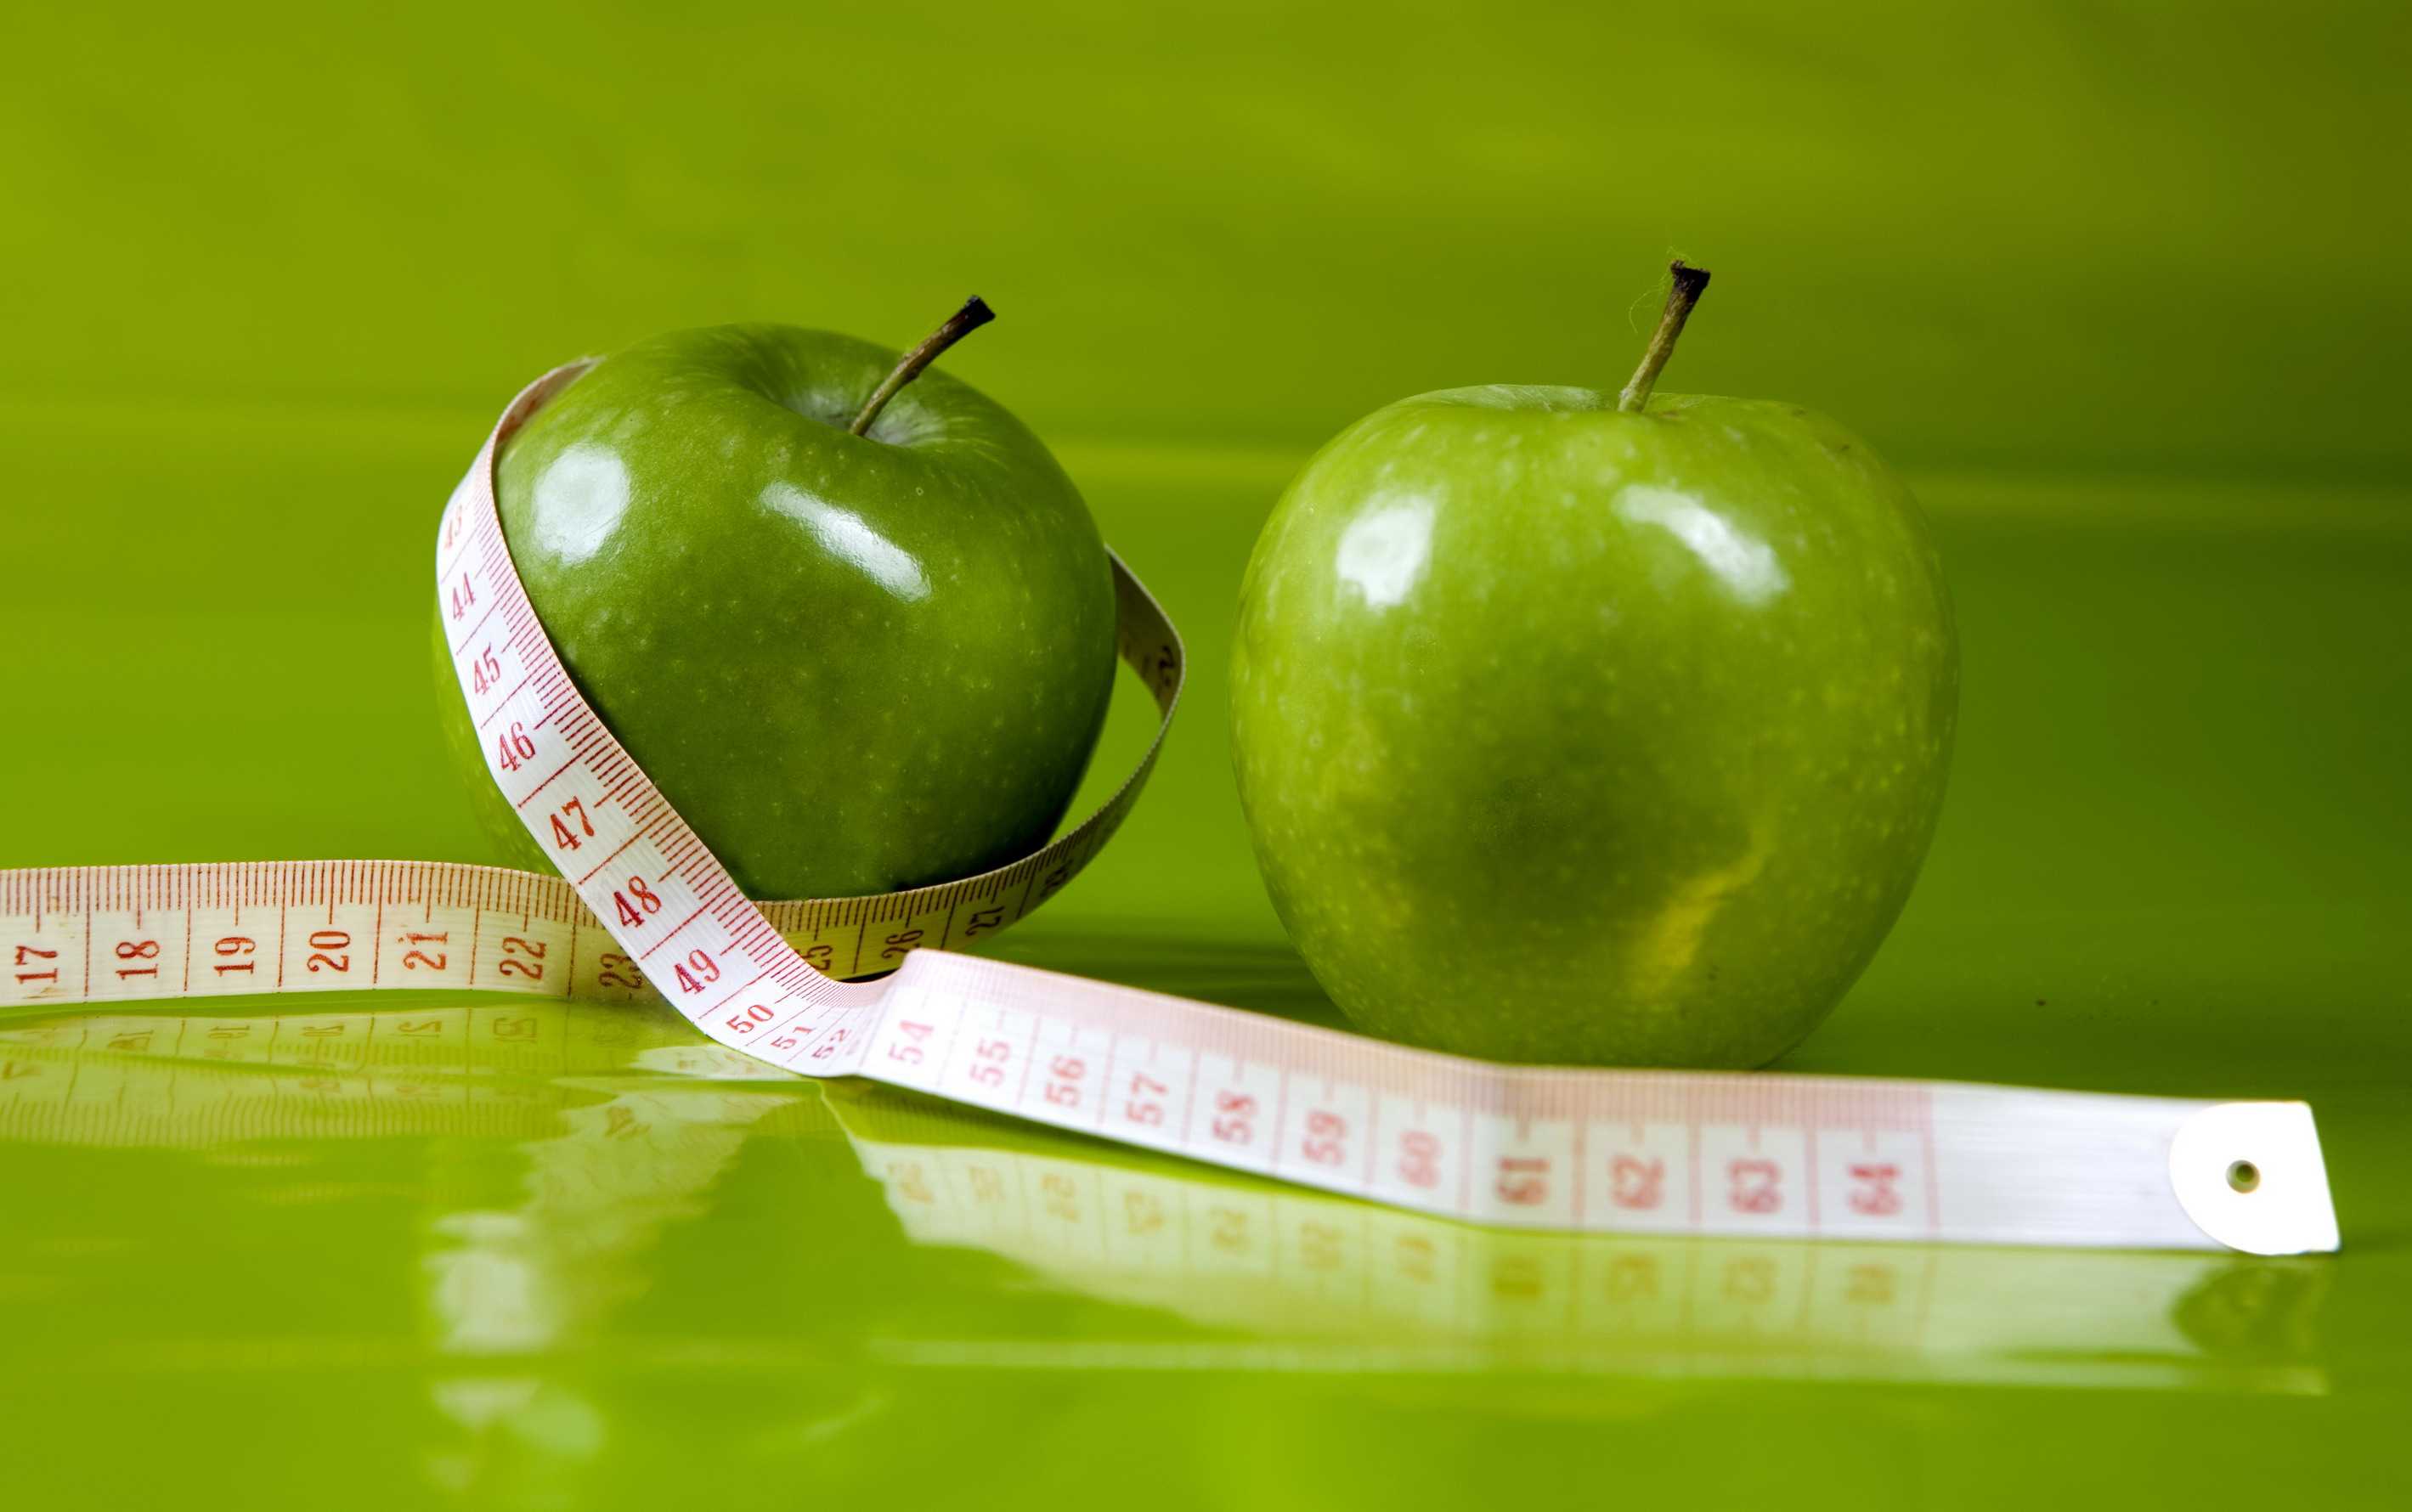 Лучшие разгрузочные дни на яблоках для быстрого похудения: описание и результаты яблочной разгрузки